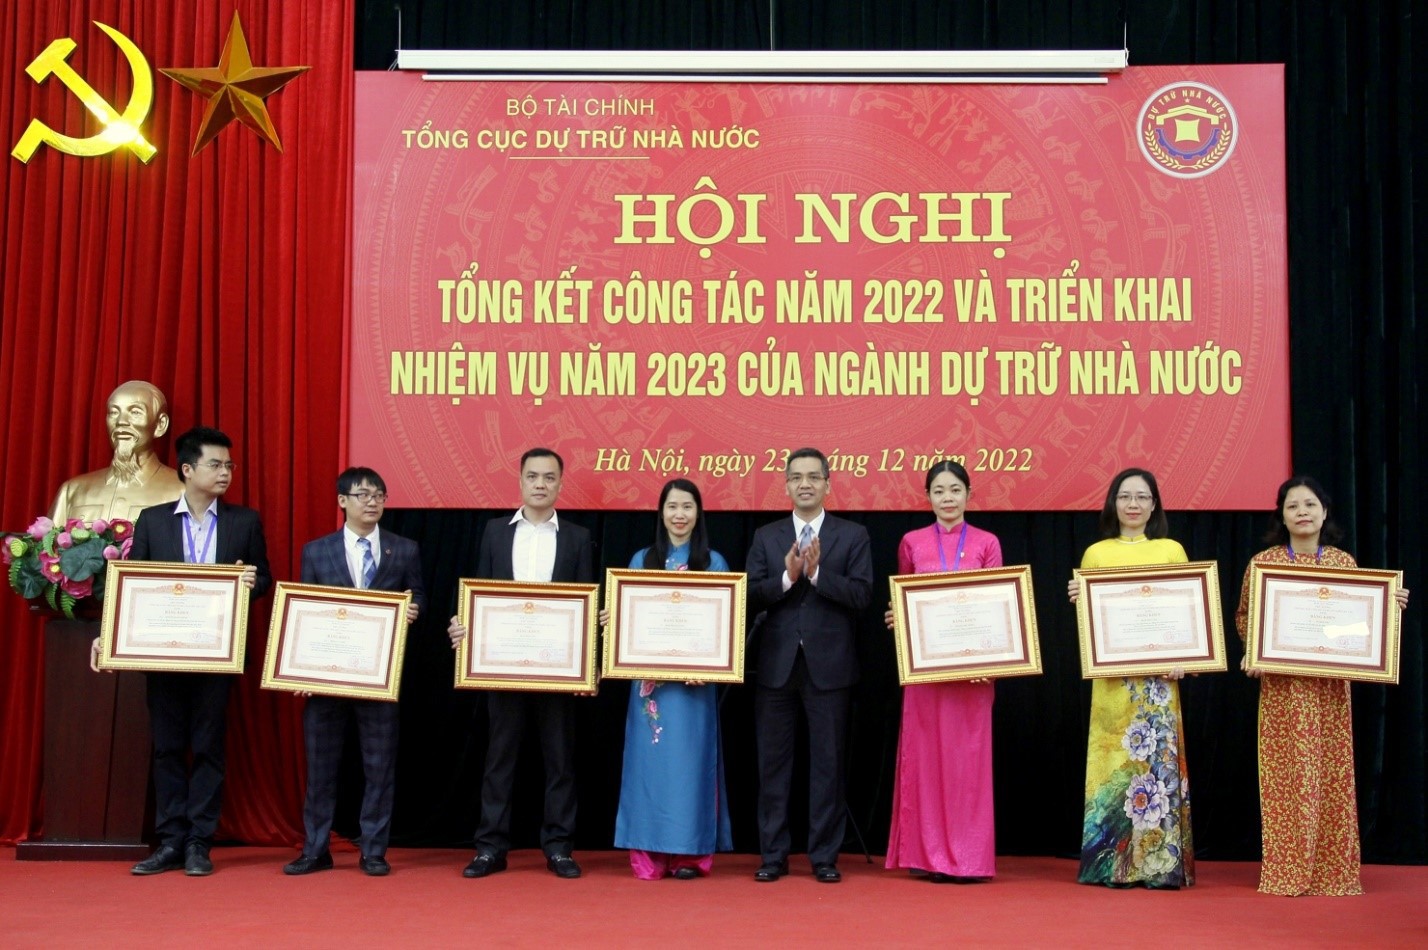 Thứ trưởng Bộ Tài chính Võ Thành Hưng trao tặng Bằng khen của Thủ tướng Chính phủ cho các cá nhân của các đơn vị thuộc cơ quan Tổng cục Dự trữ Nhà nước đạt thành tích xuất sắc trong công tác.